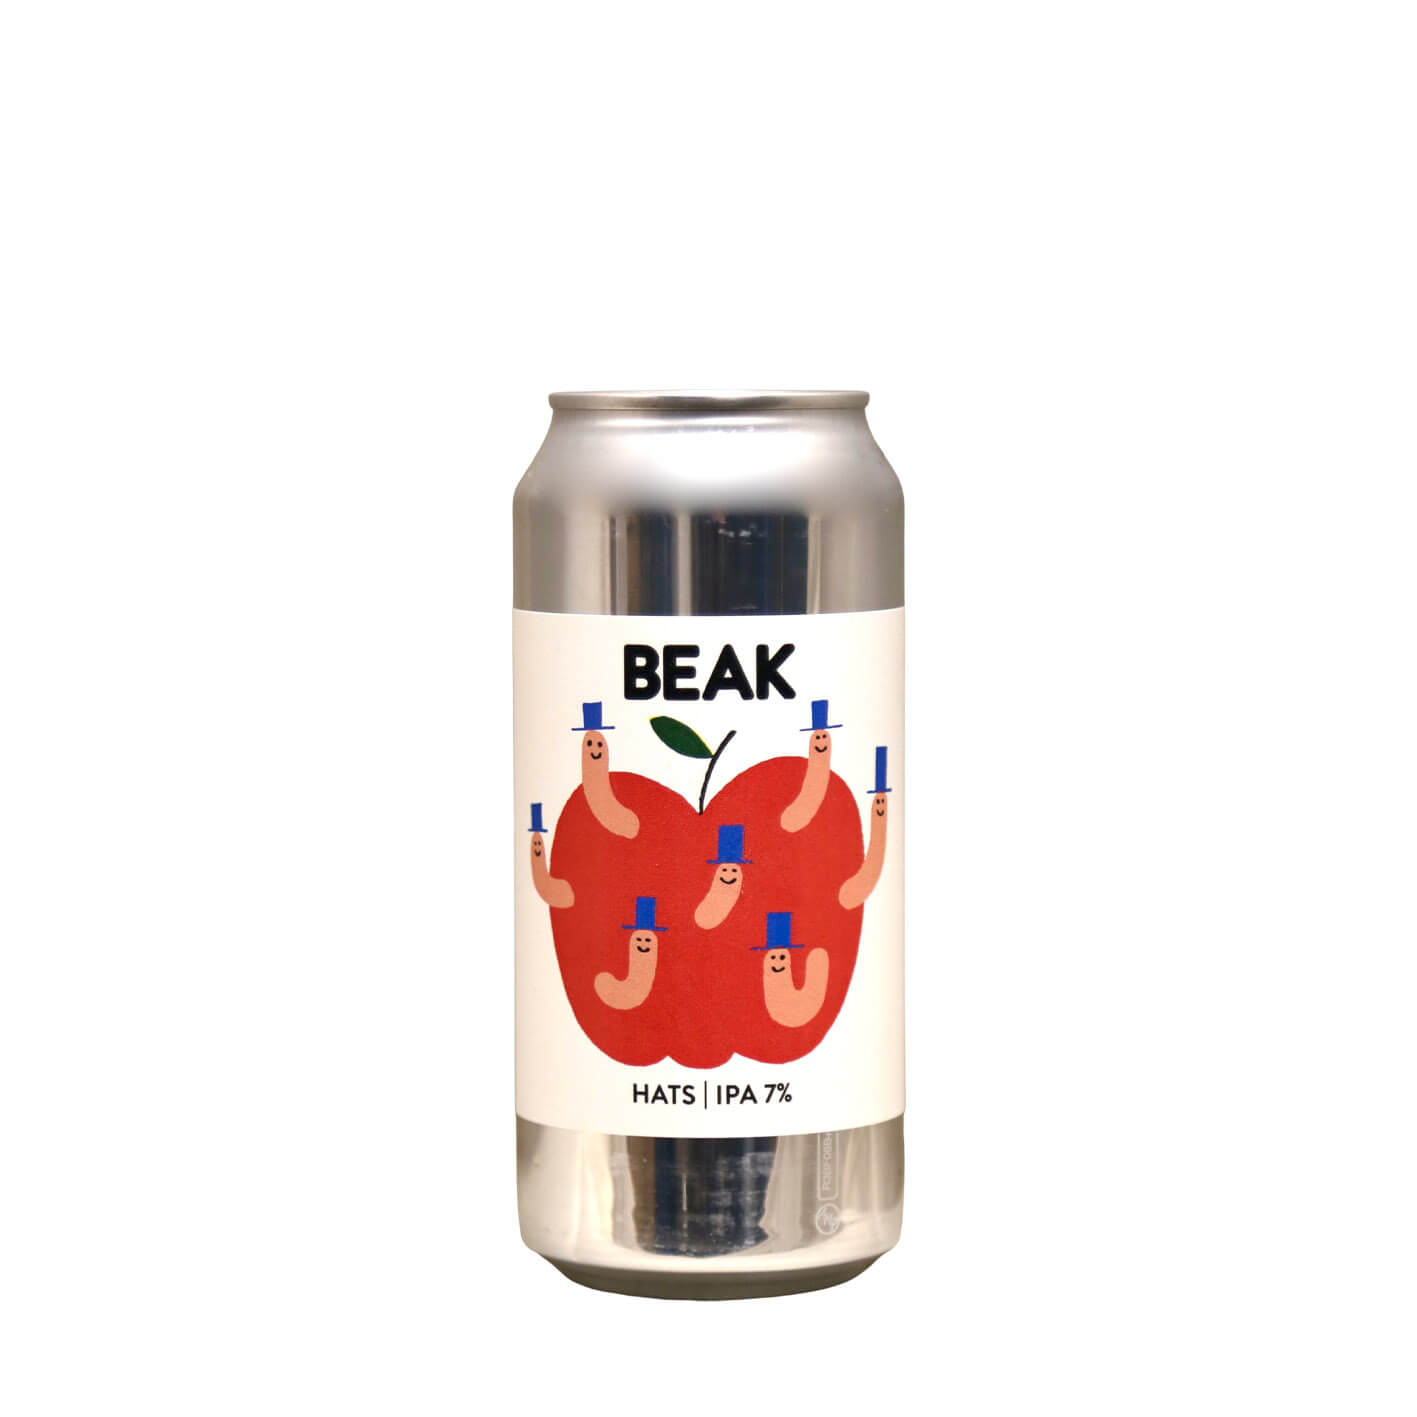 Beak Brewery - Hats Ipa 